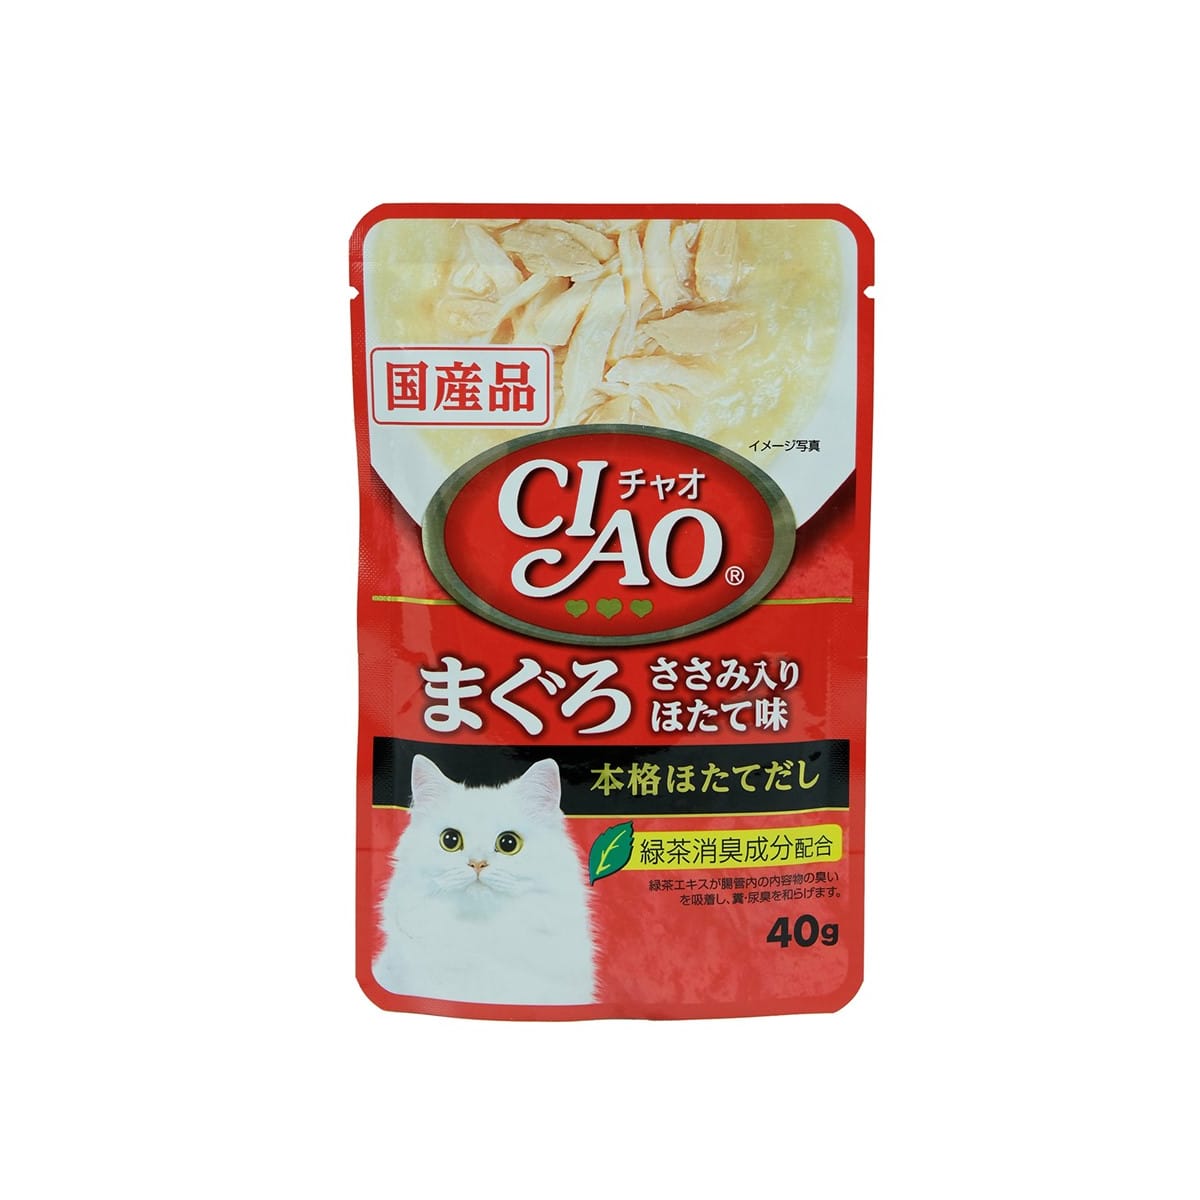 Ciao เชาว์ อาหารเปียก แบบเพ้าช์ สำหรับแมว รสทูน่าและสันในไก่หอยเชลล์ 40 g_1